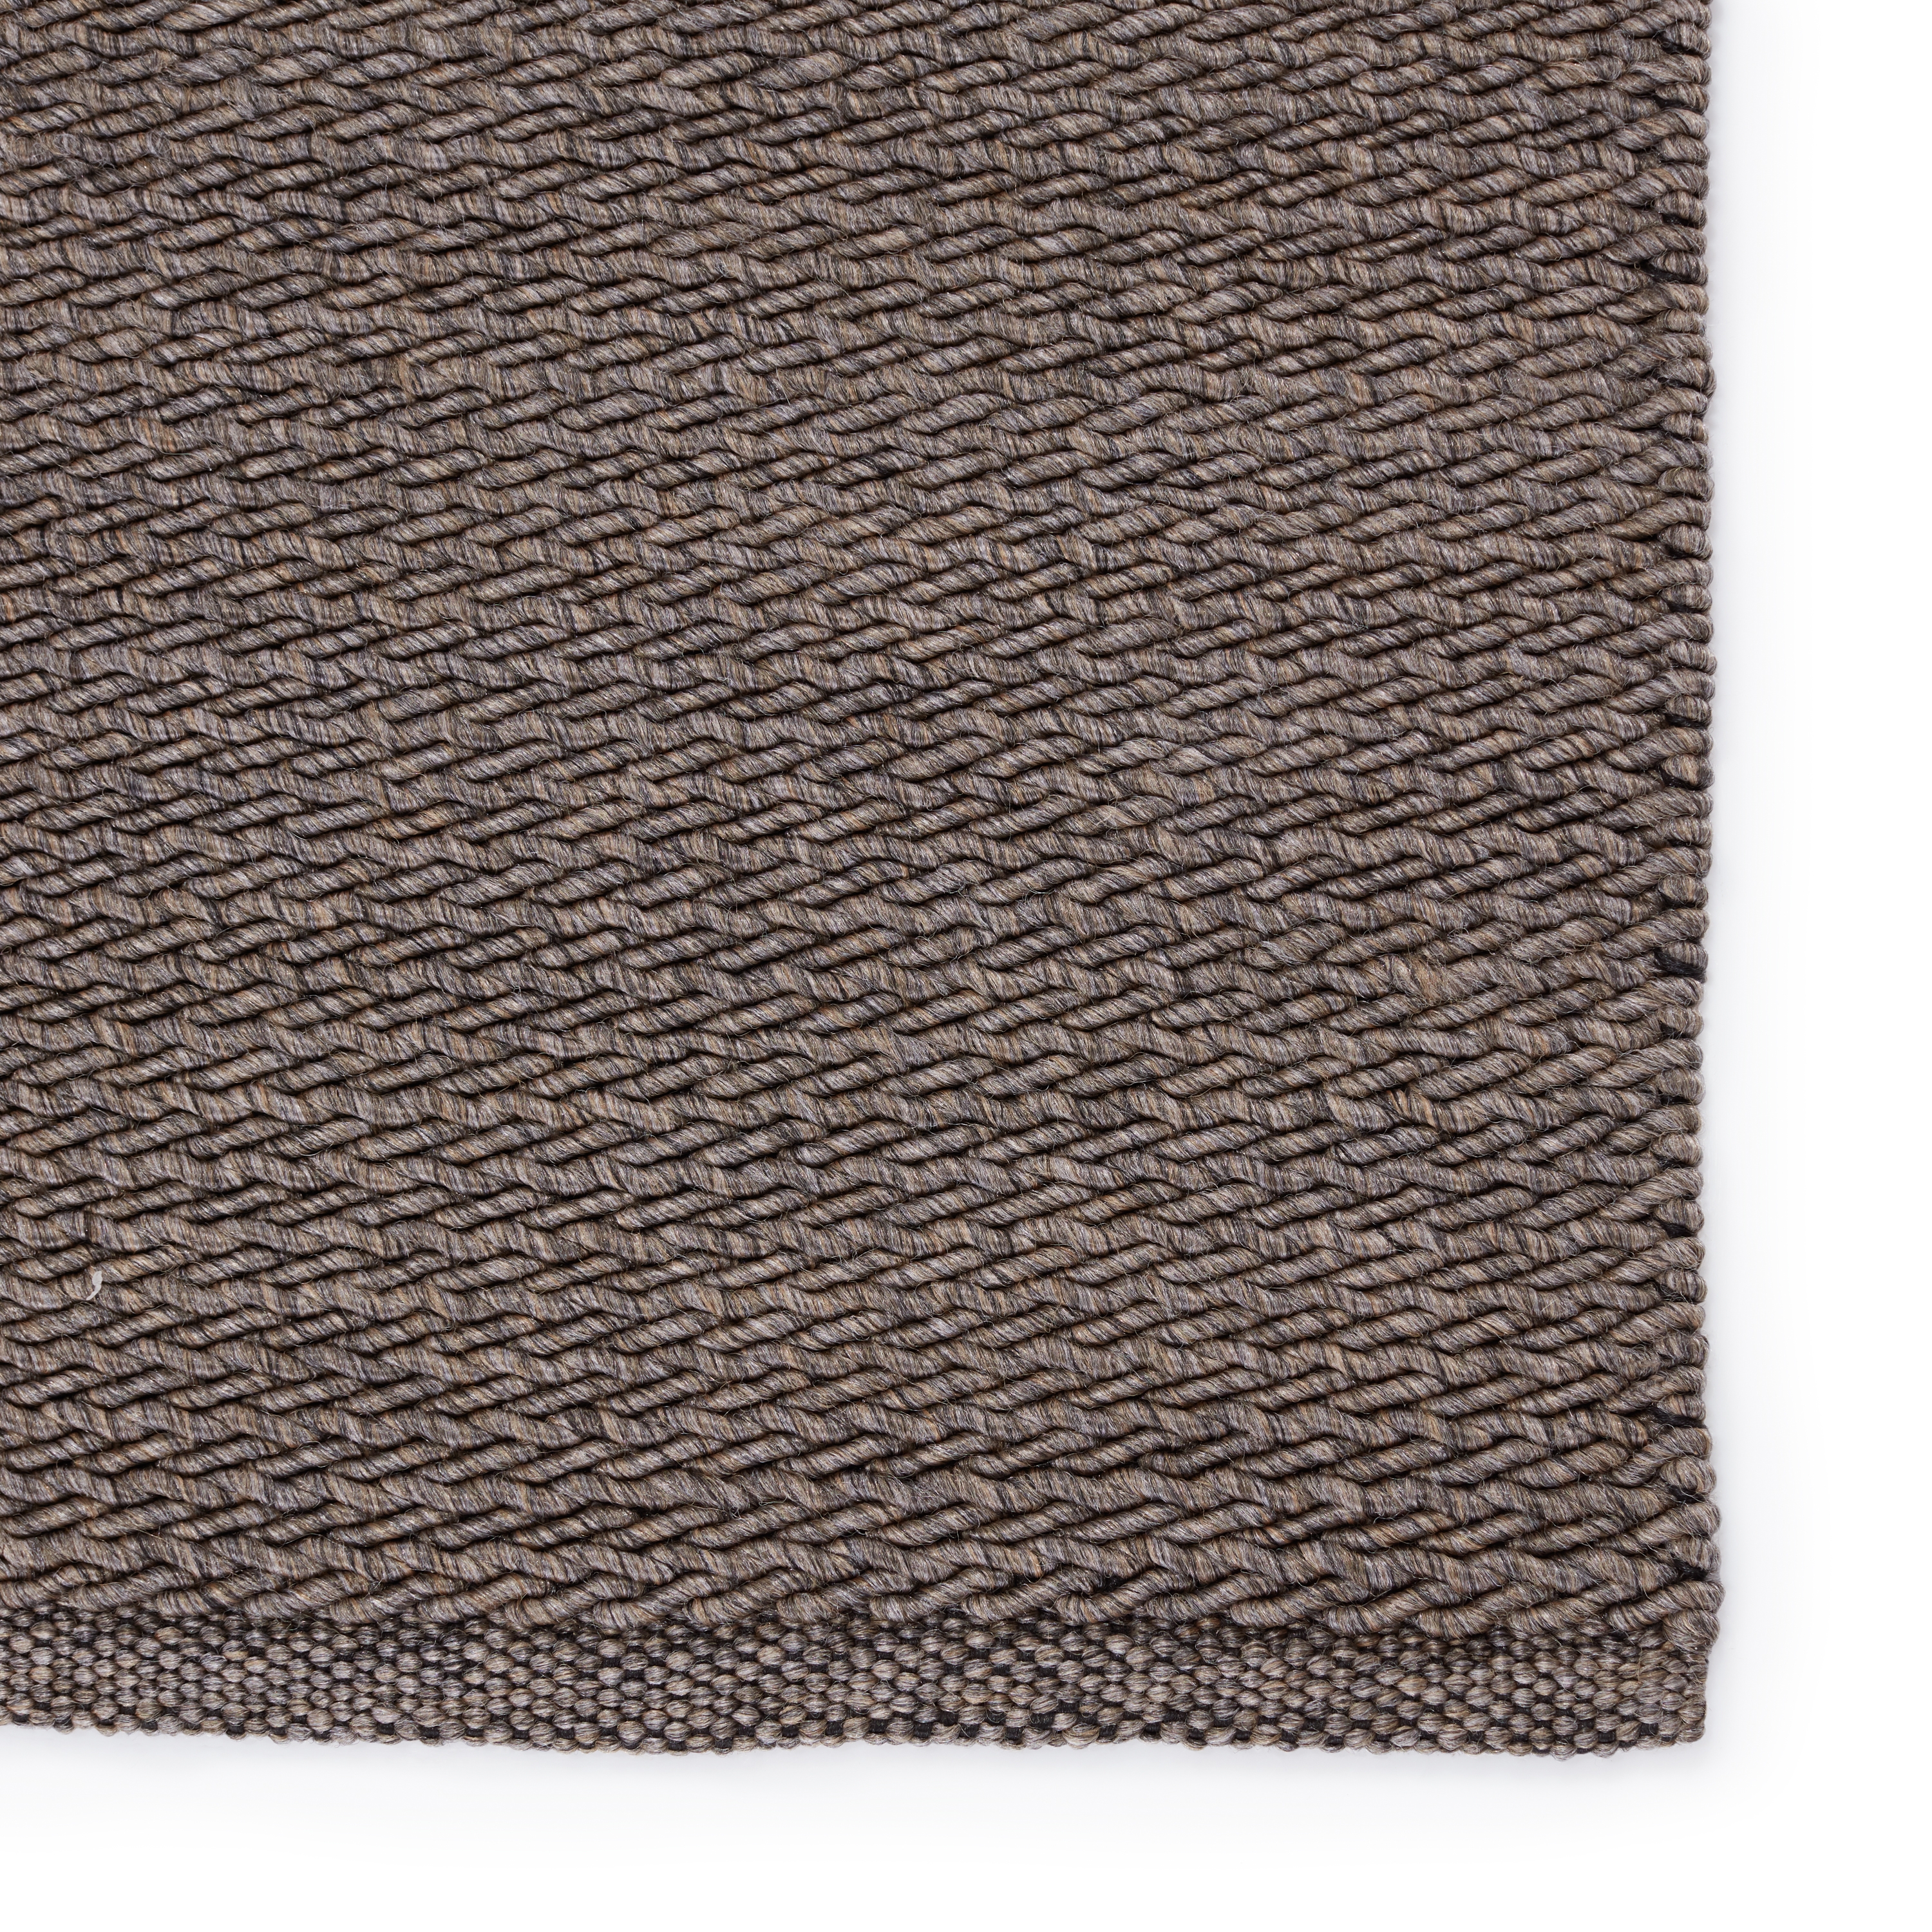 Ryker Indoor/ Outdoor Solid Brown/ Gray Area Rug (7'6"X9'6") - Image 3